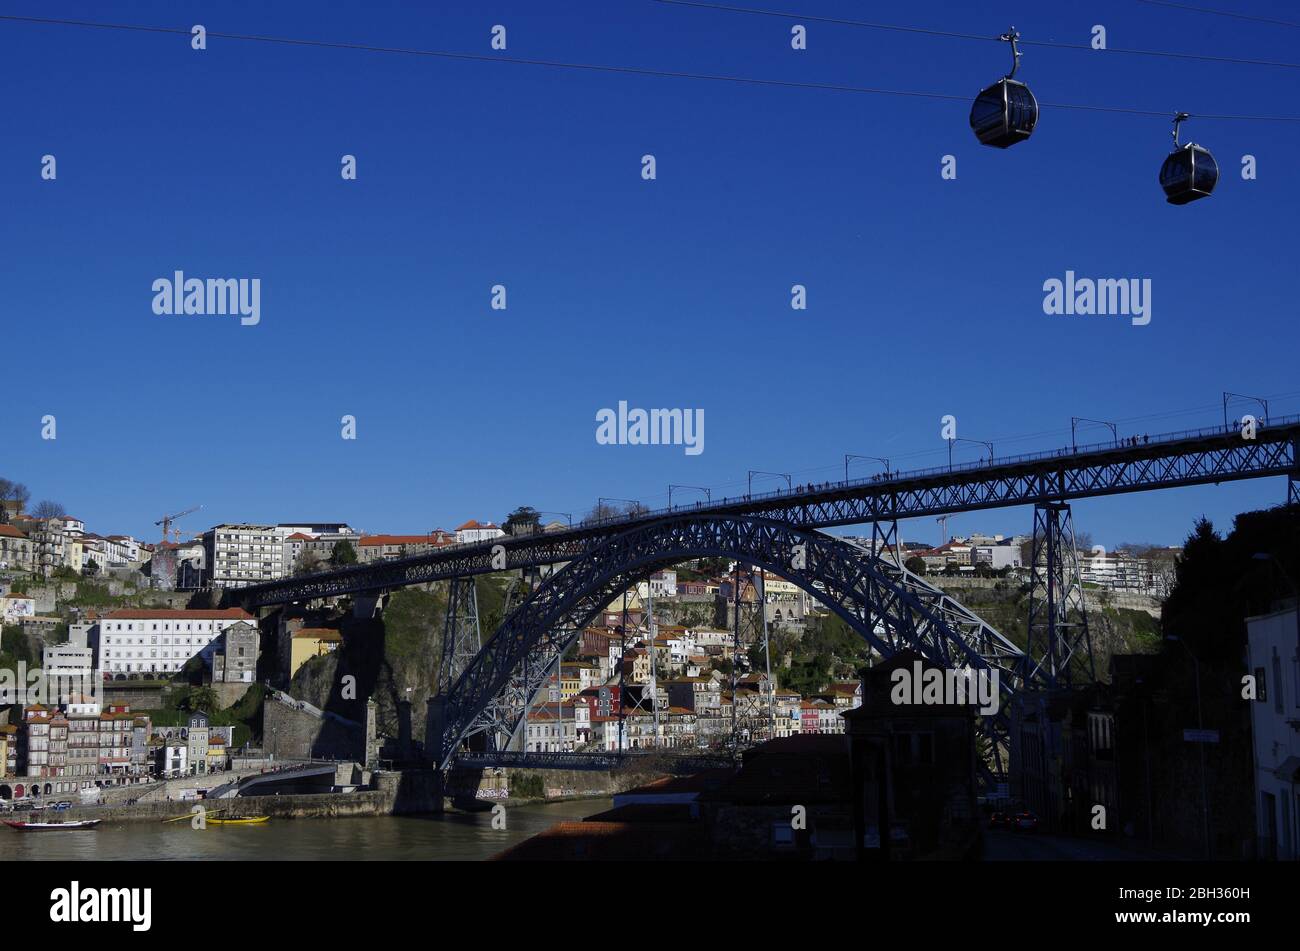 L'arche de métal à double pont historique Ponte Luis I enjambant la vallée à flancs escarpés du fleuve Douro à Porto, au Portugal, avec des téléphériques au-dessus Banque D'Images